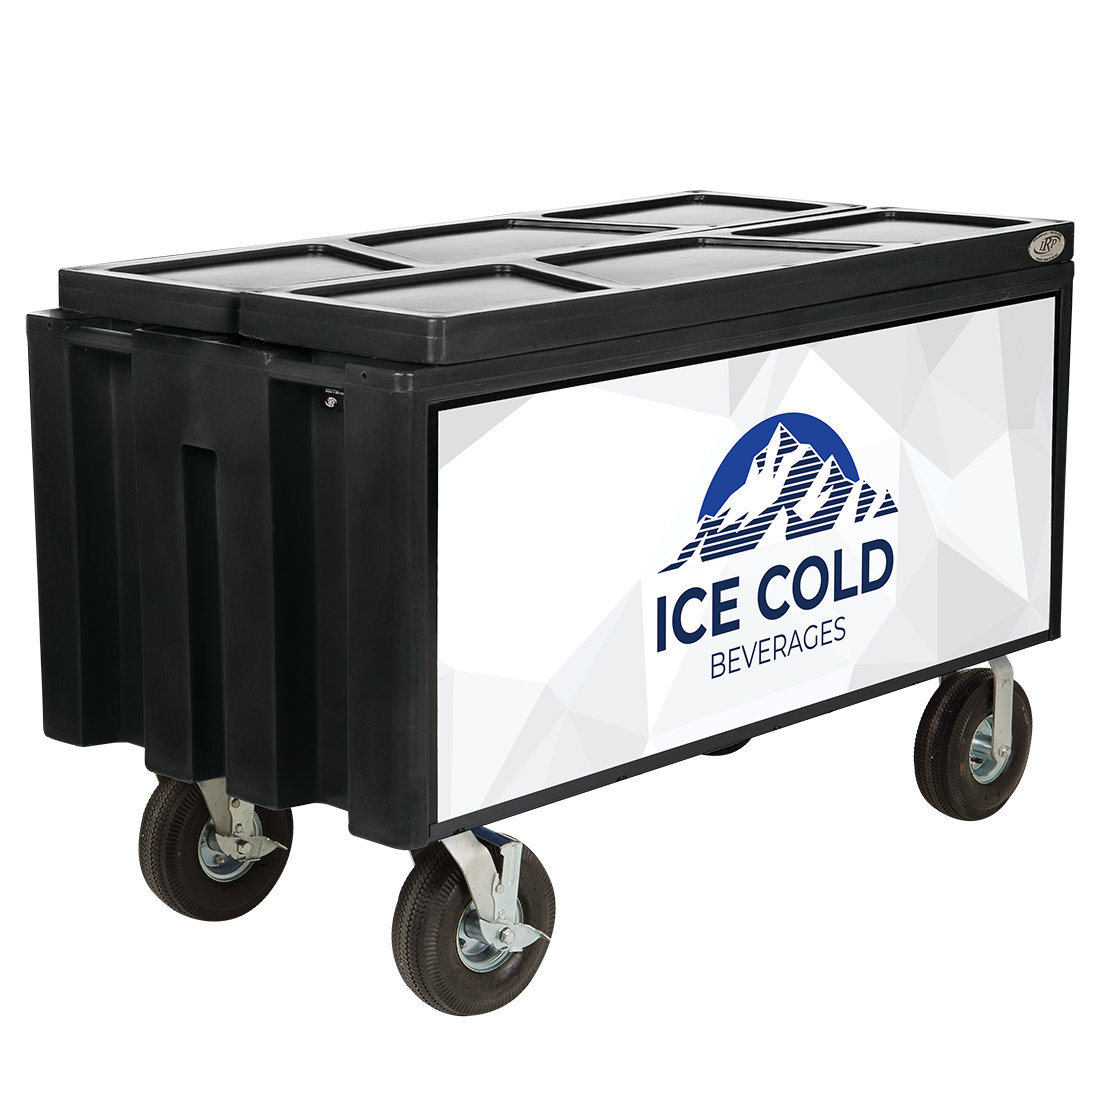 6 Quart Styrofoam Cooler Bulk Orders | Cold Freight